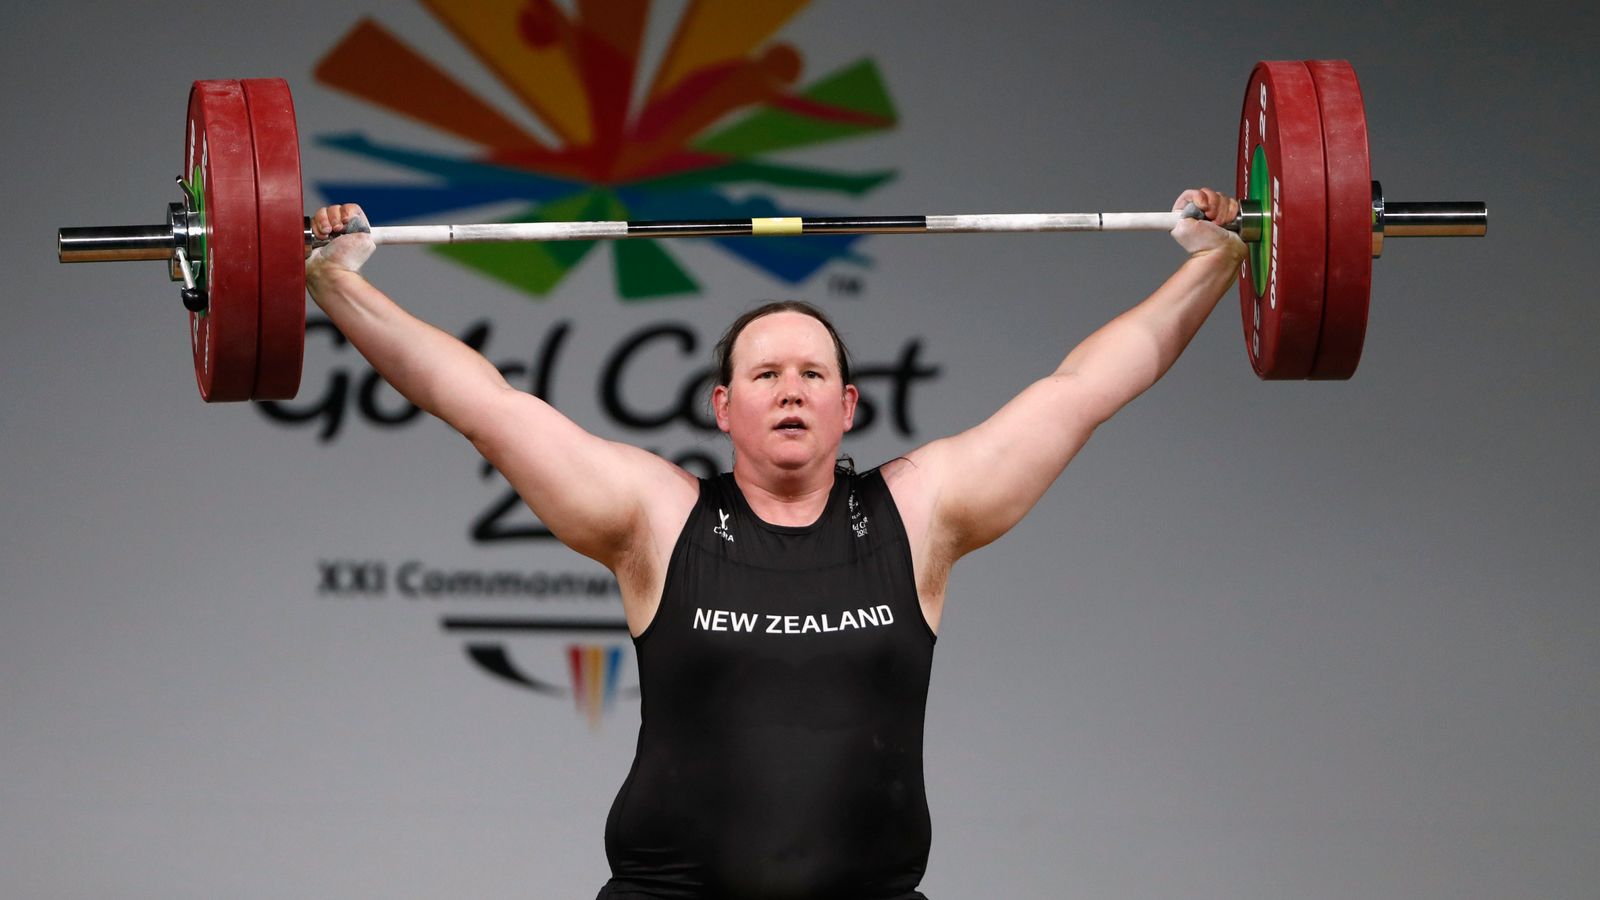 Atlet transgender tidak harus menurunkan testosteron untuk bersaing, kata IOC saat mengubah pedoman |  Berita Dunia